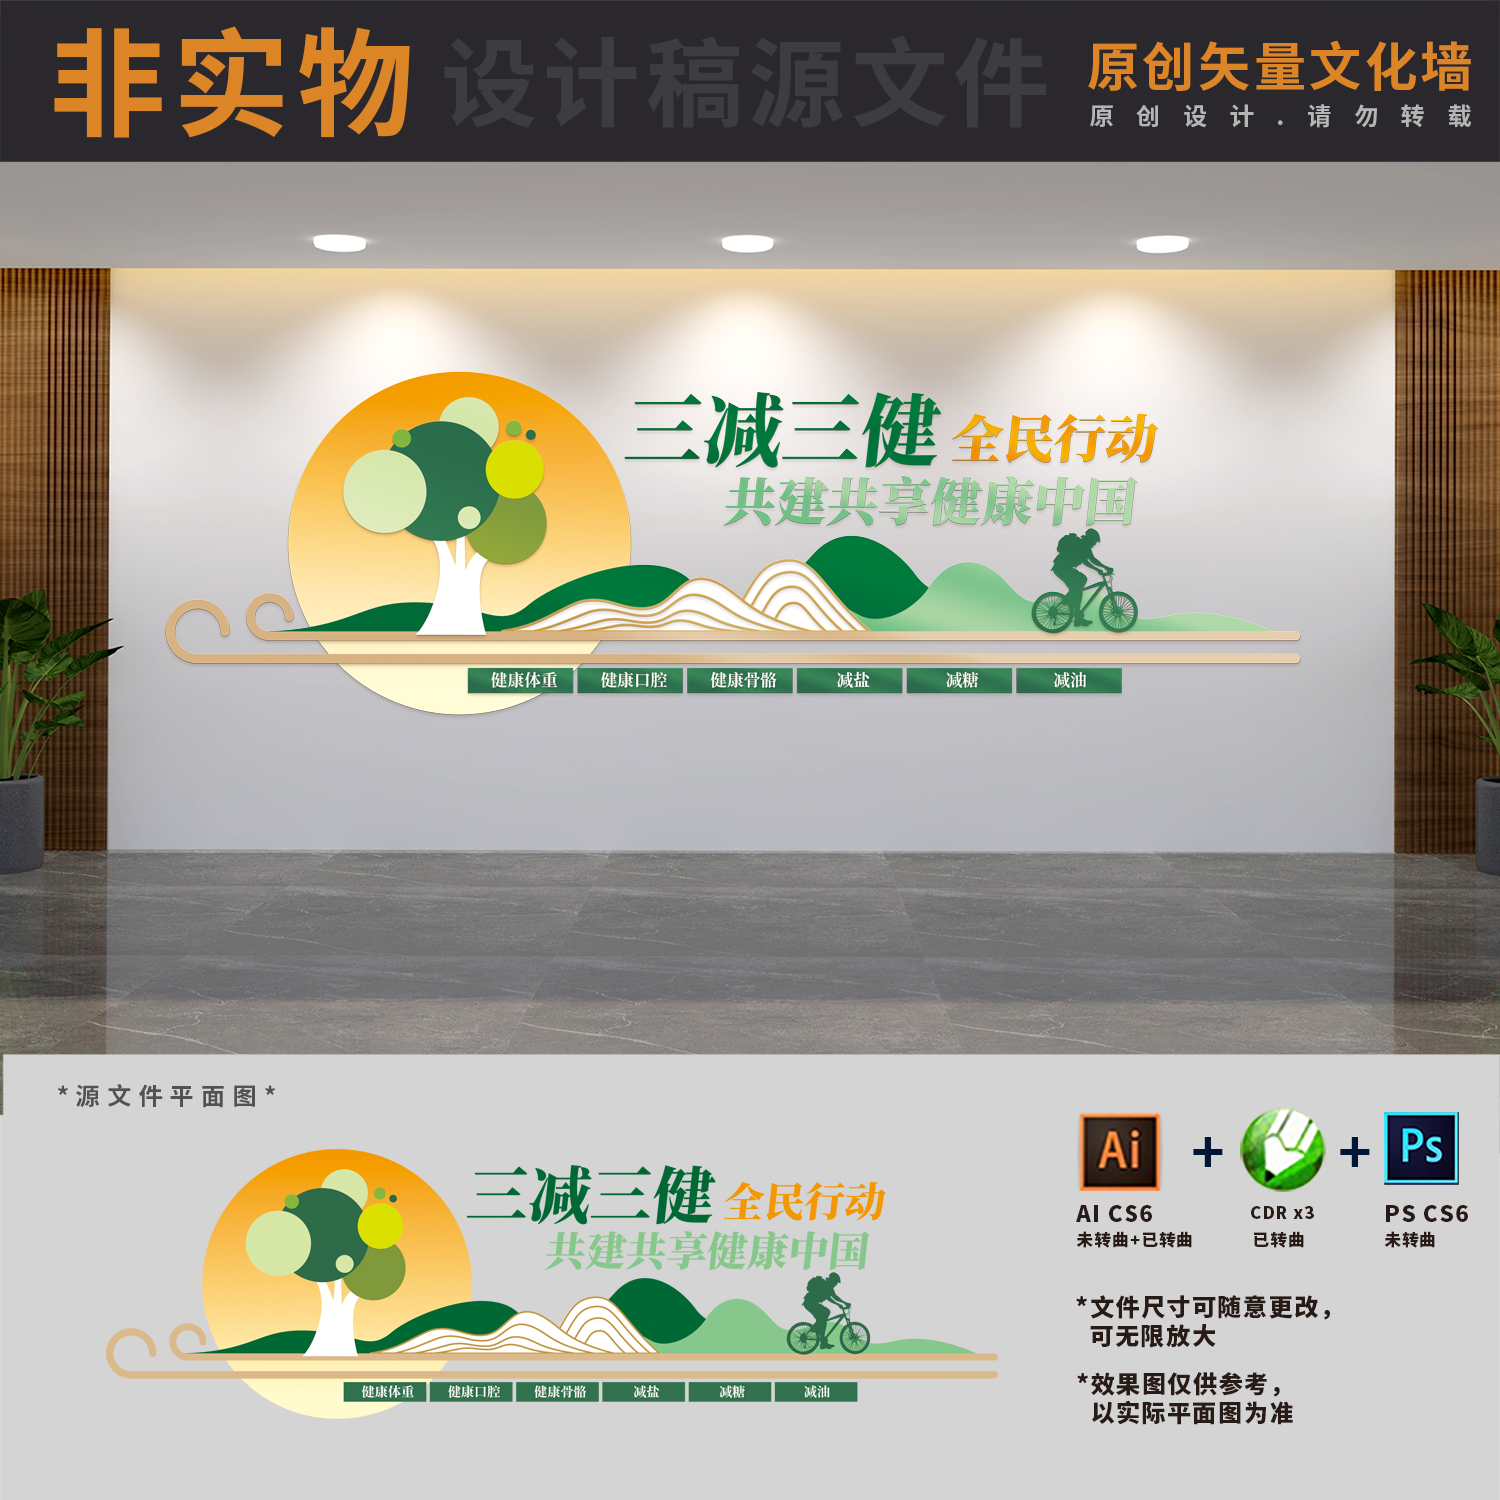 三减三健共建共享健康中国社区医院宣传文化墙AI+CDR+PSD设计稿